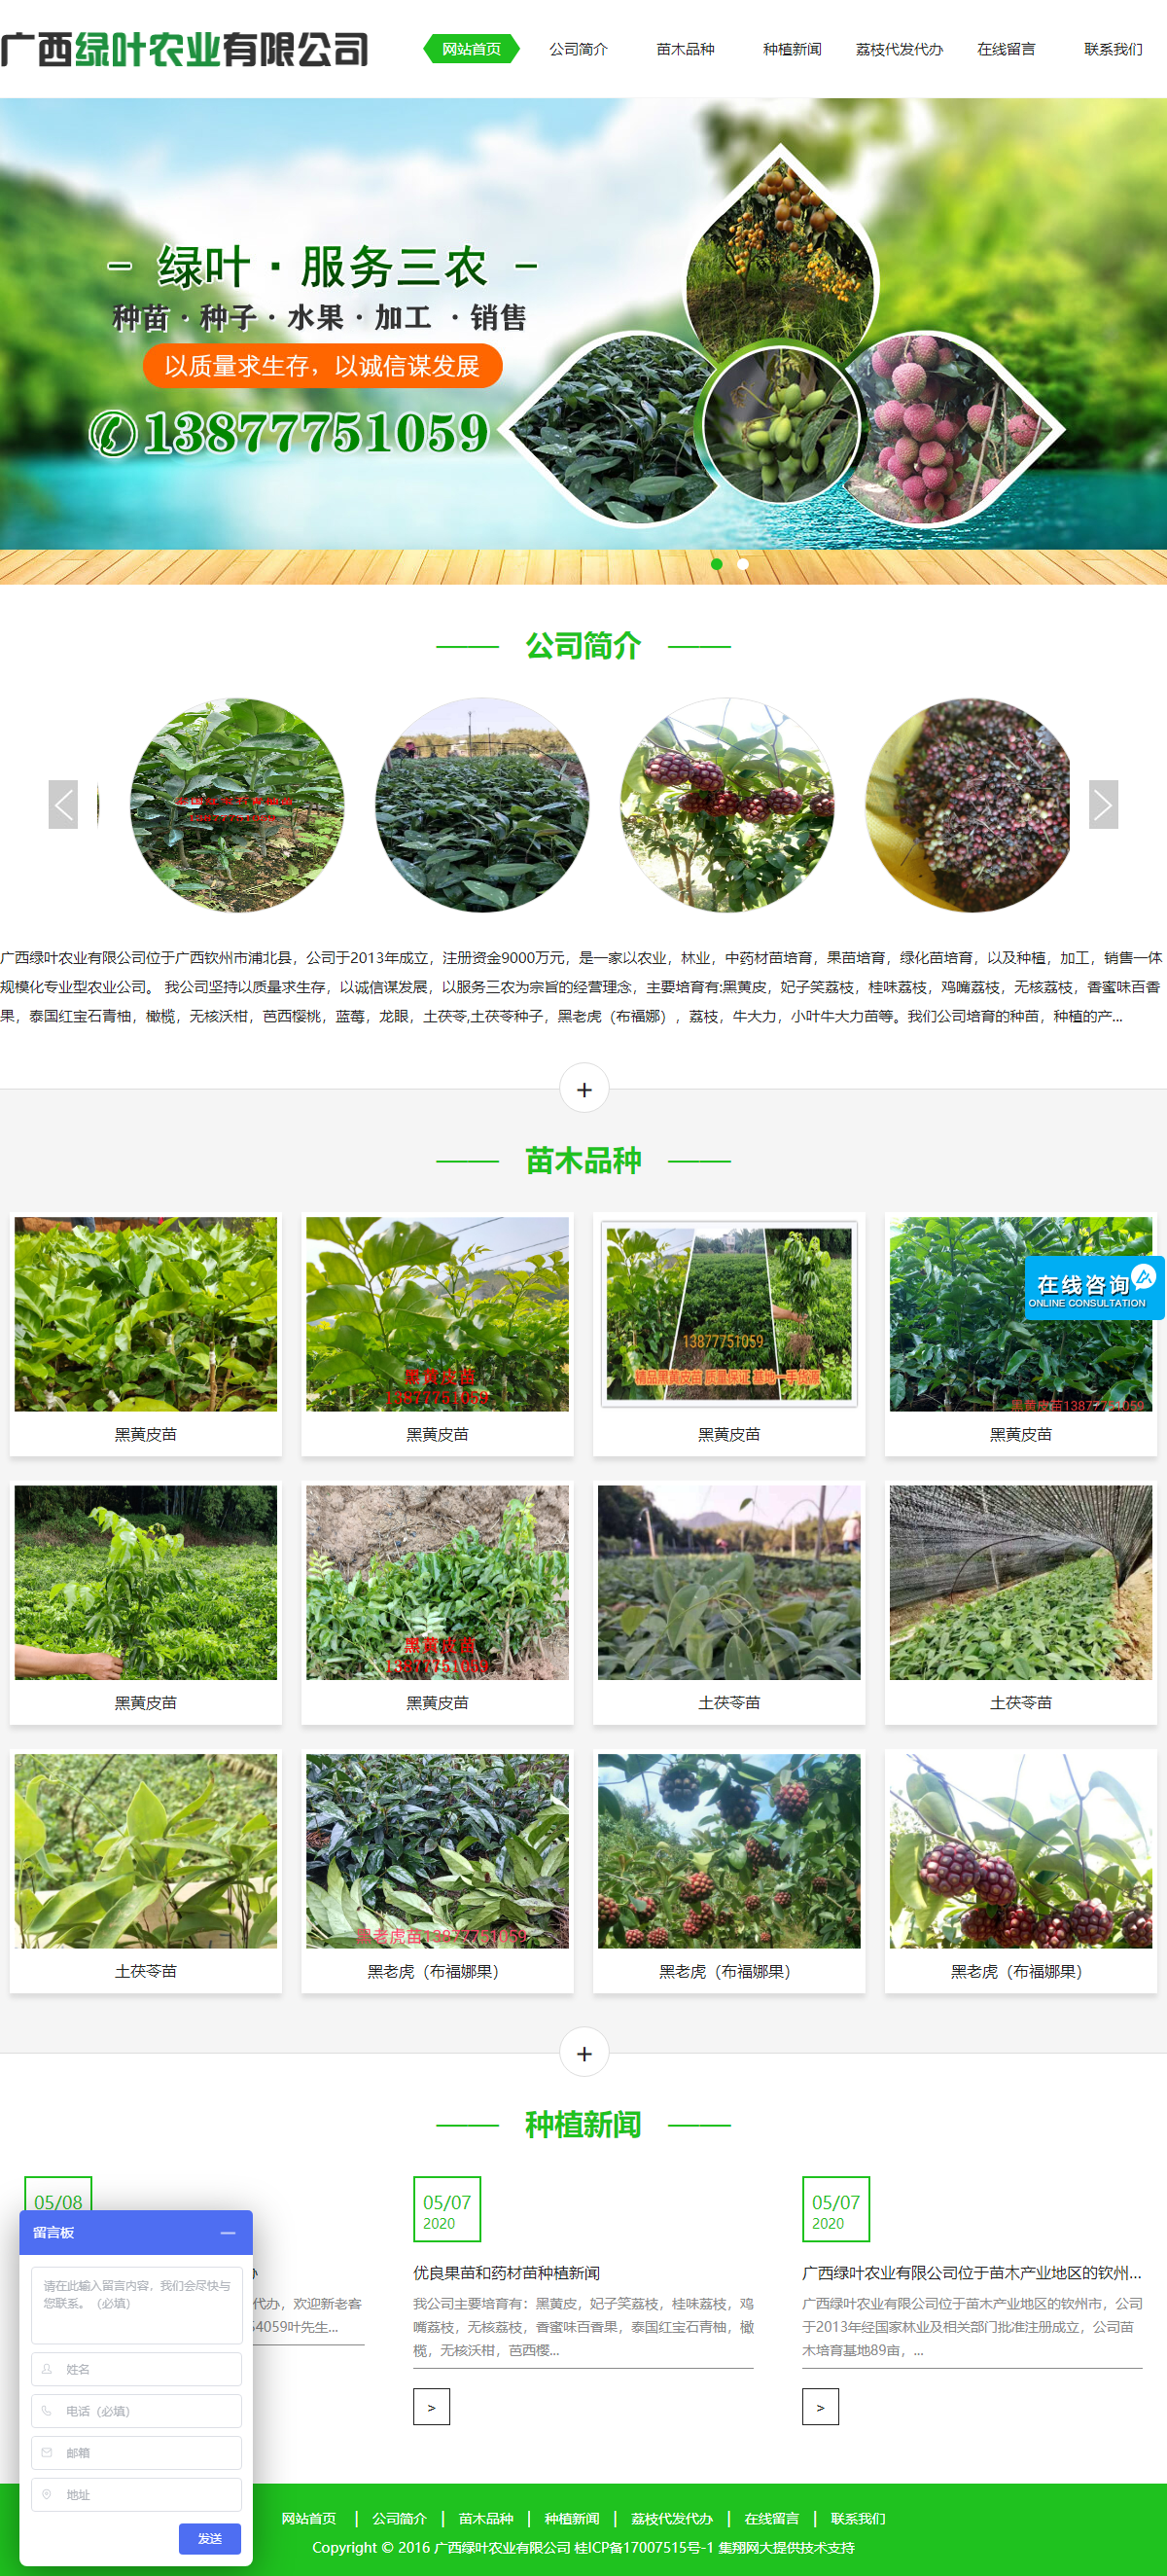 广西绿叶农业有限公司网站案例